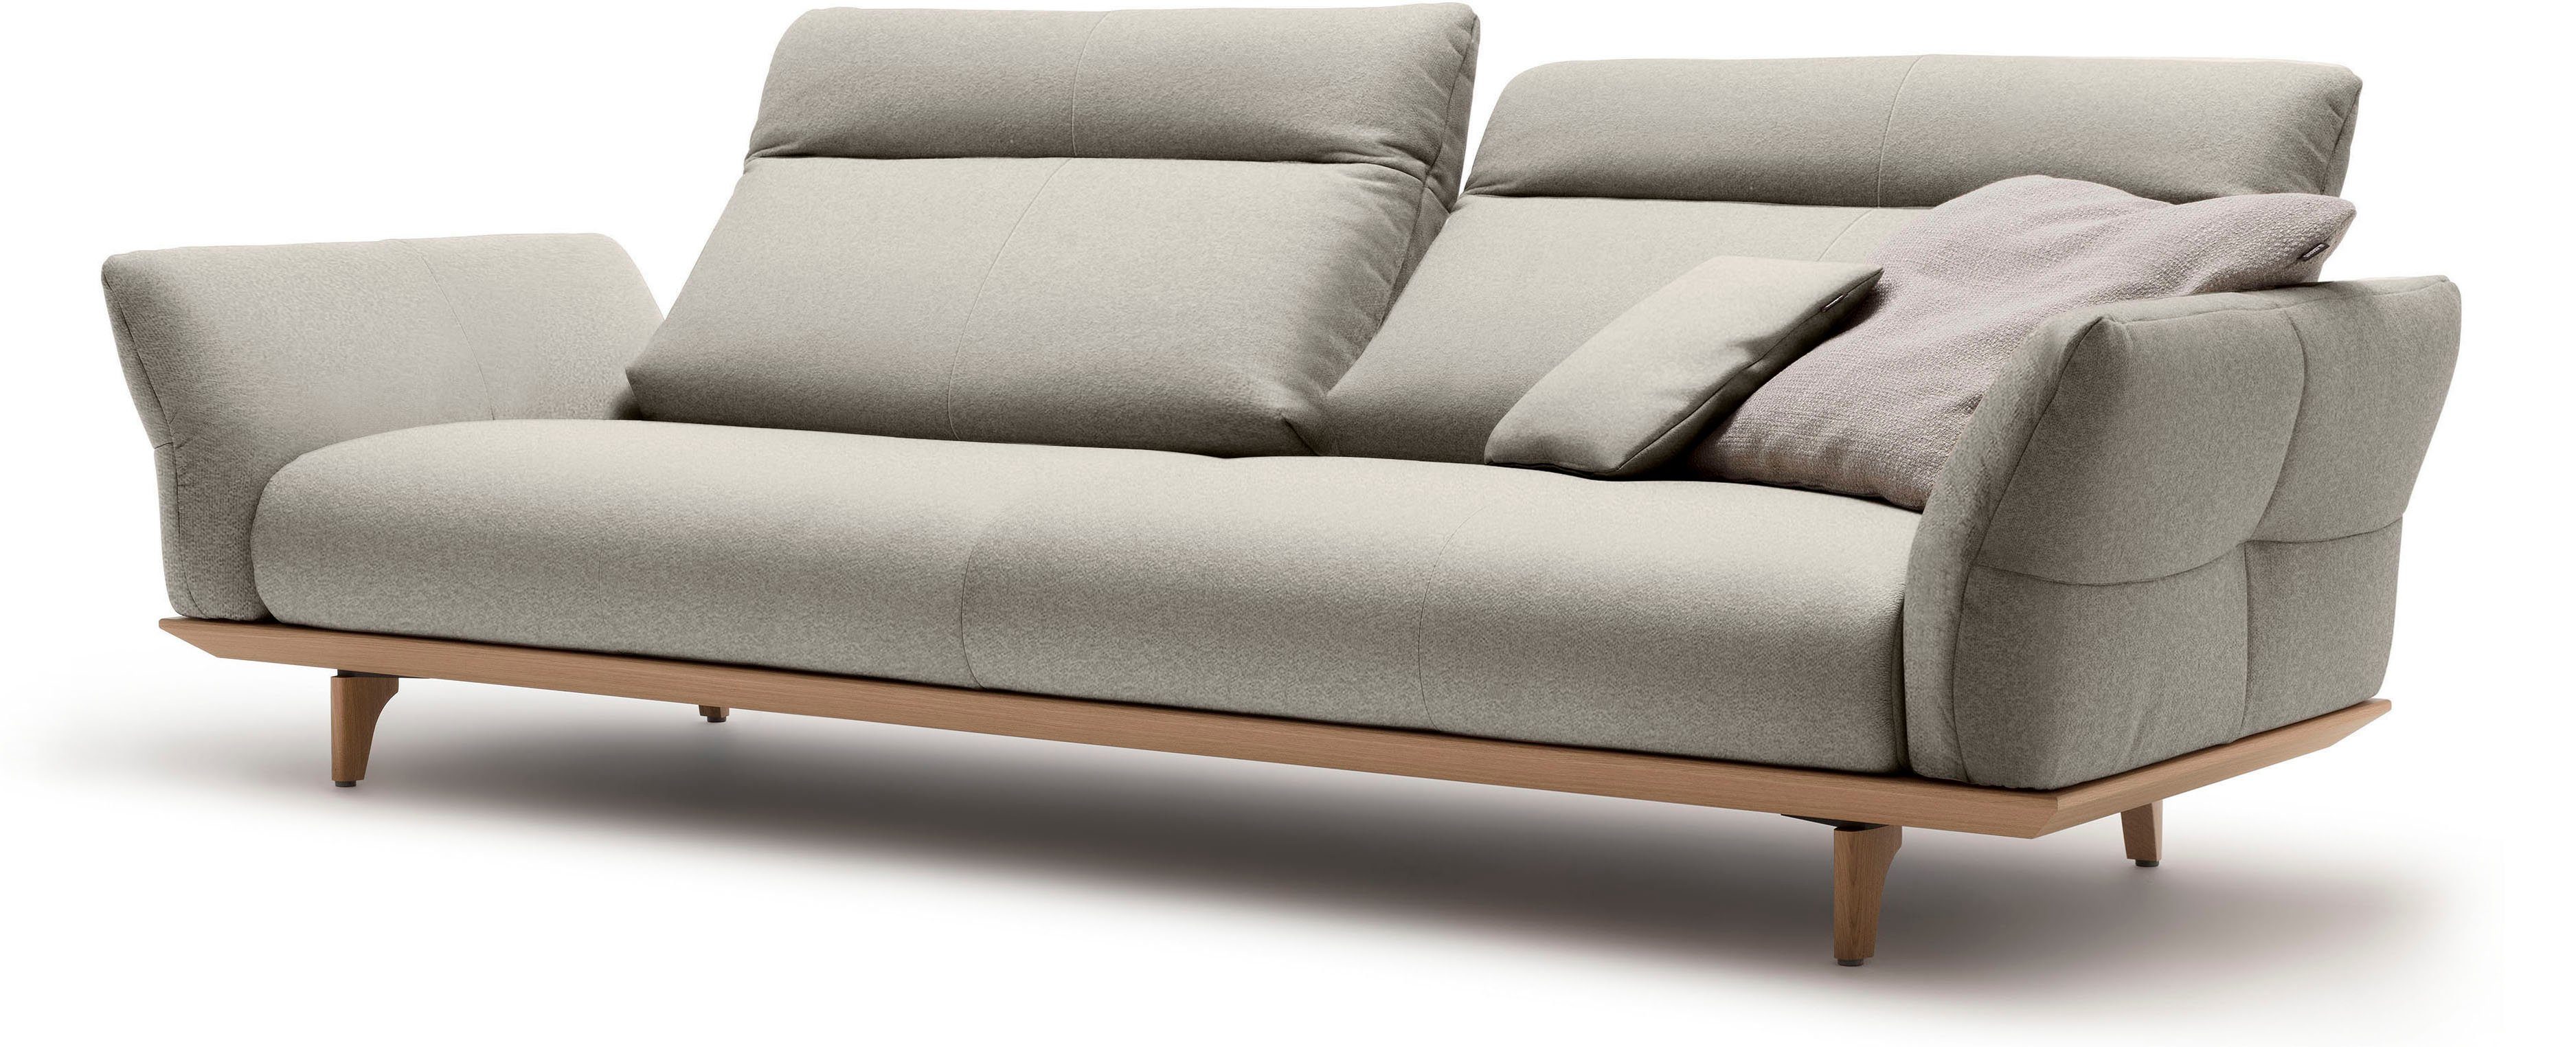 248 sofa Eiche Sockel in hs.460, cm Füße Eiche, natur, 4-Sitzer Breite hülsta